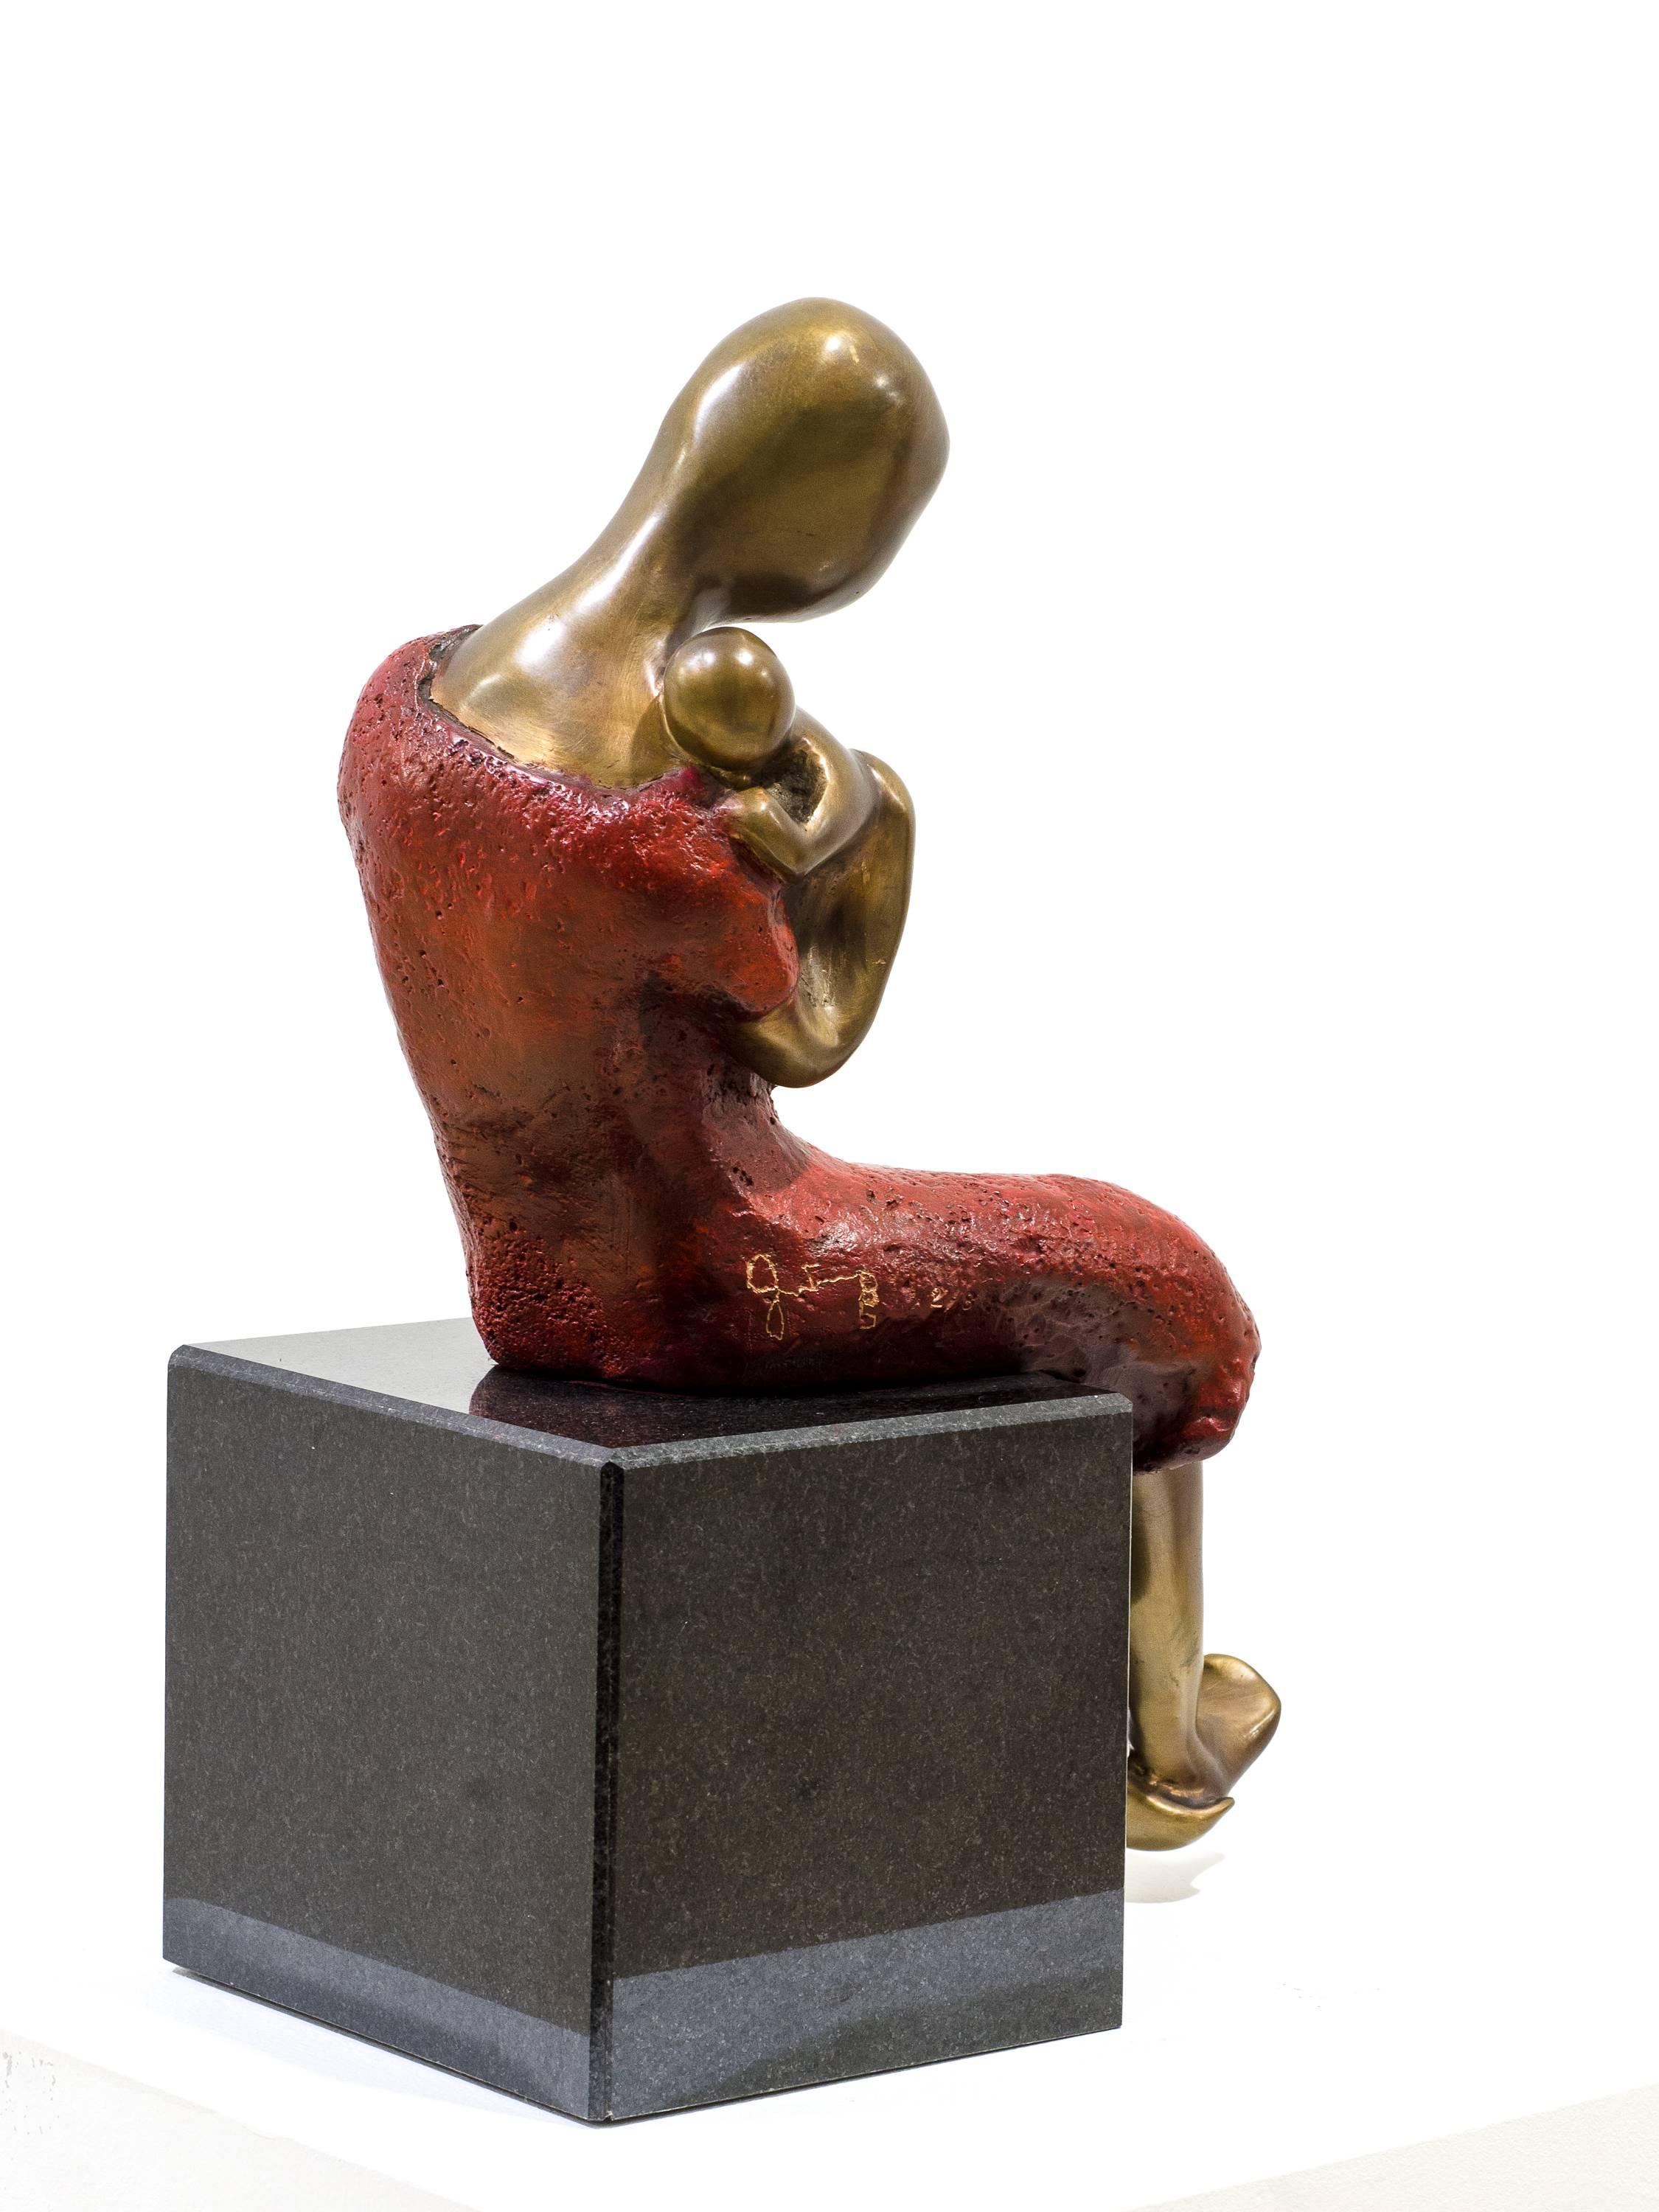 Beatriz Gerenstein contemporary bronze sculpture 